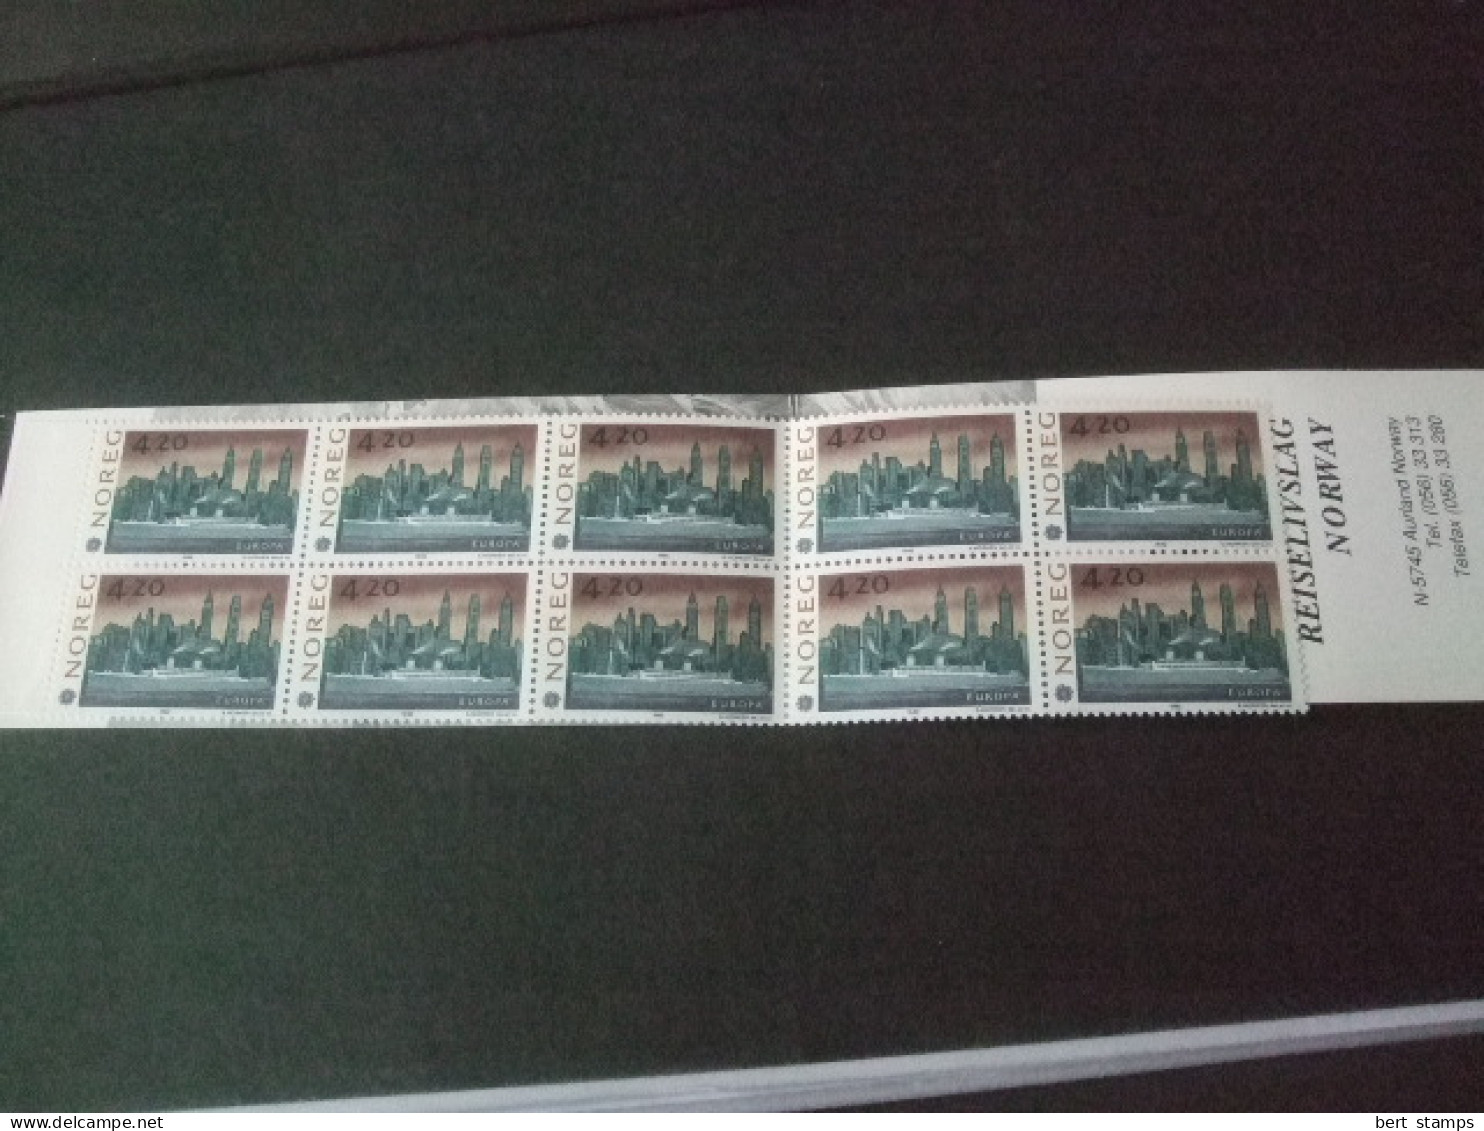 Noorwegen, Norge Norway, 1992, LOCAL BOOKLET,  Flamsbanen Railway - Postzegelboekjes